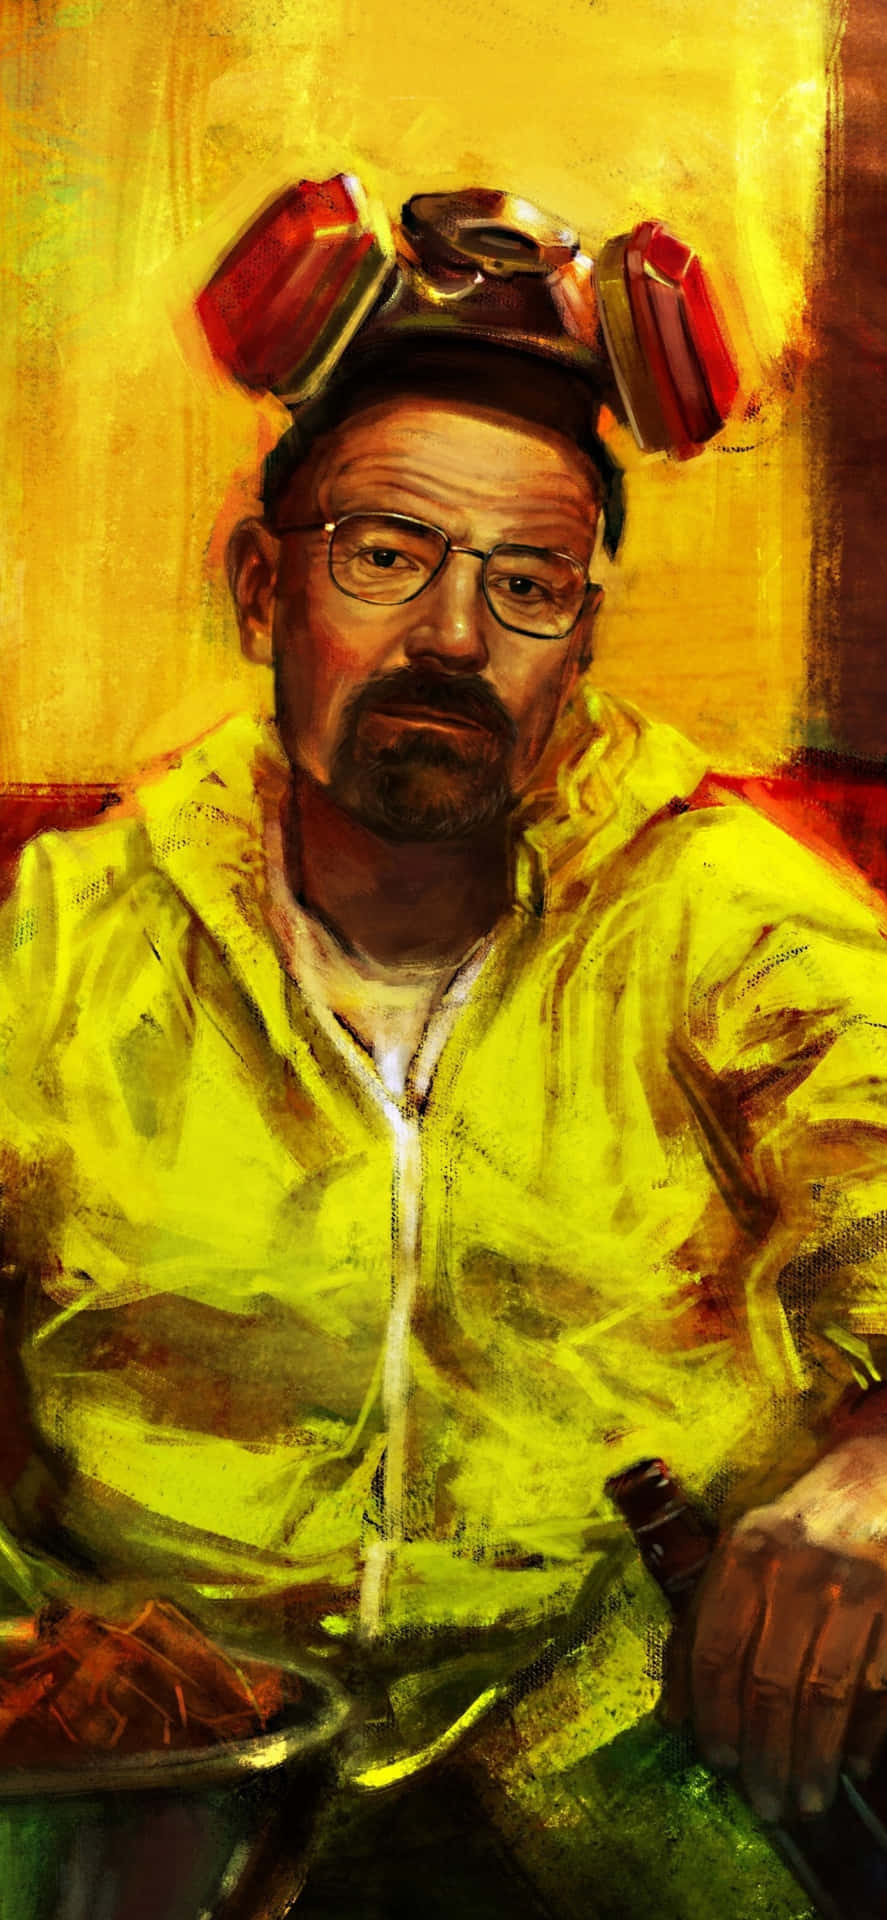 Yellow Hazmat Suit Portrait Background